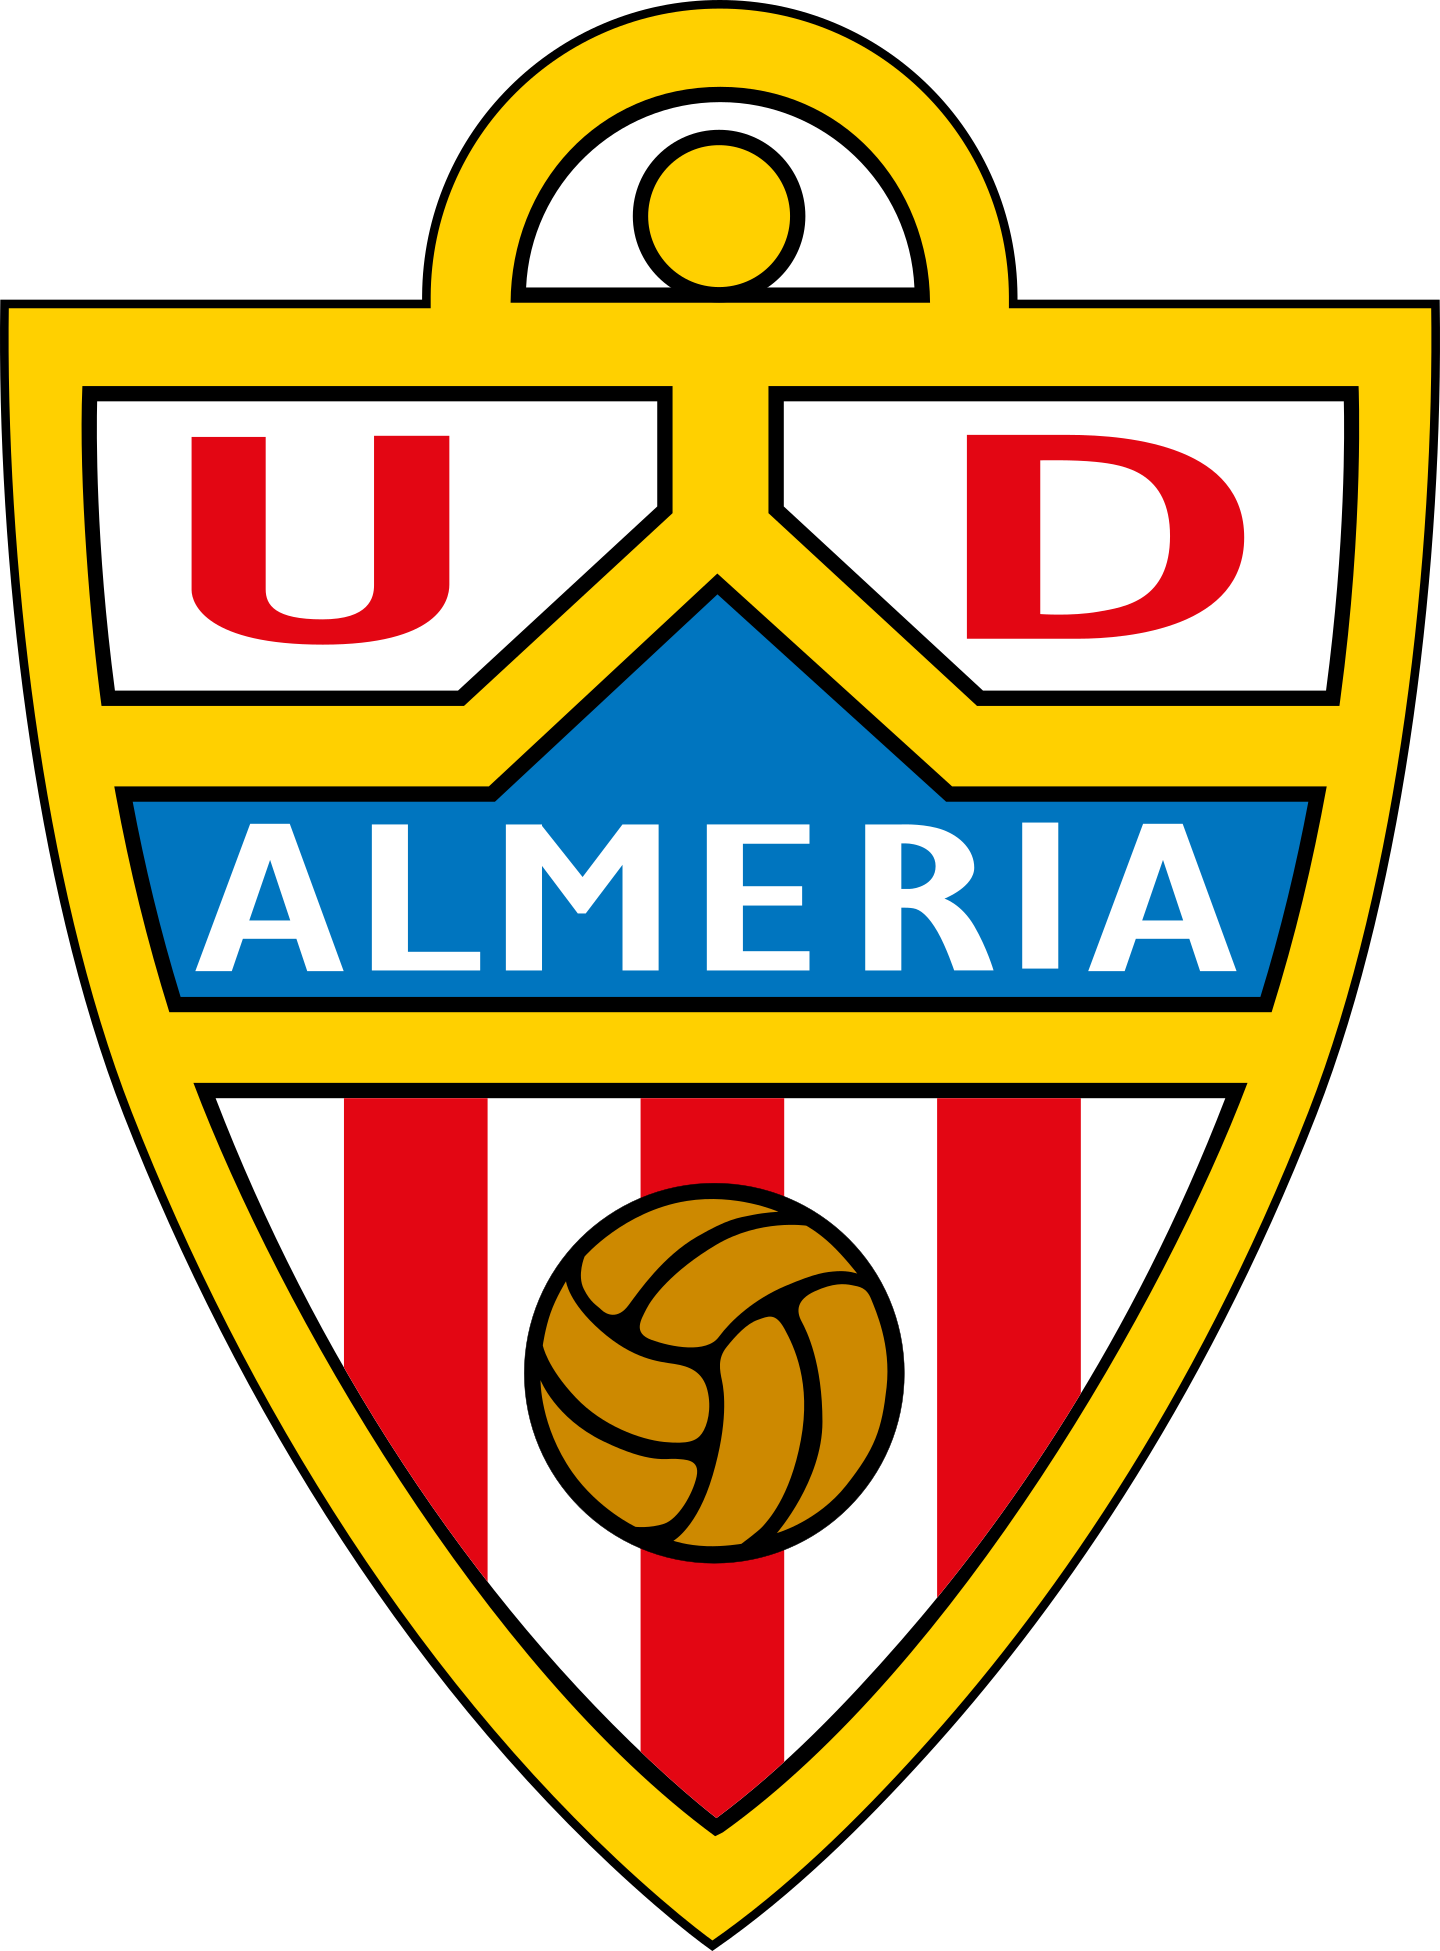 ud almeria logo 2 - UD Almeria Logo